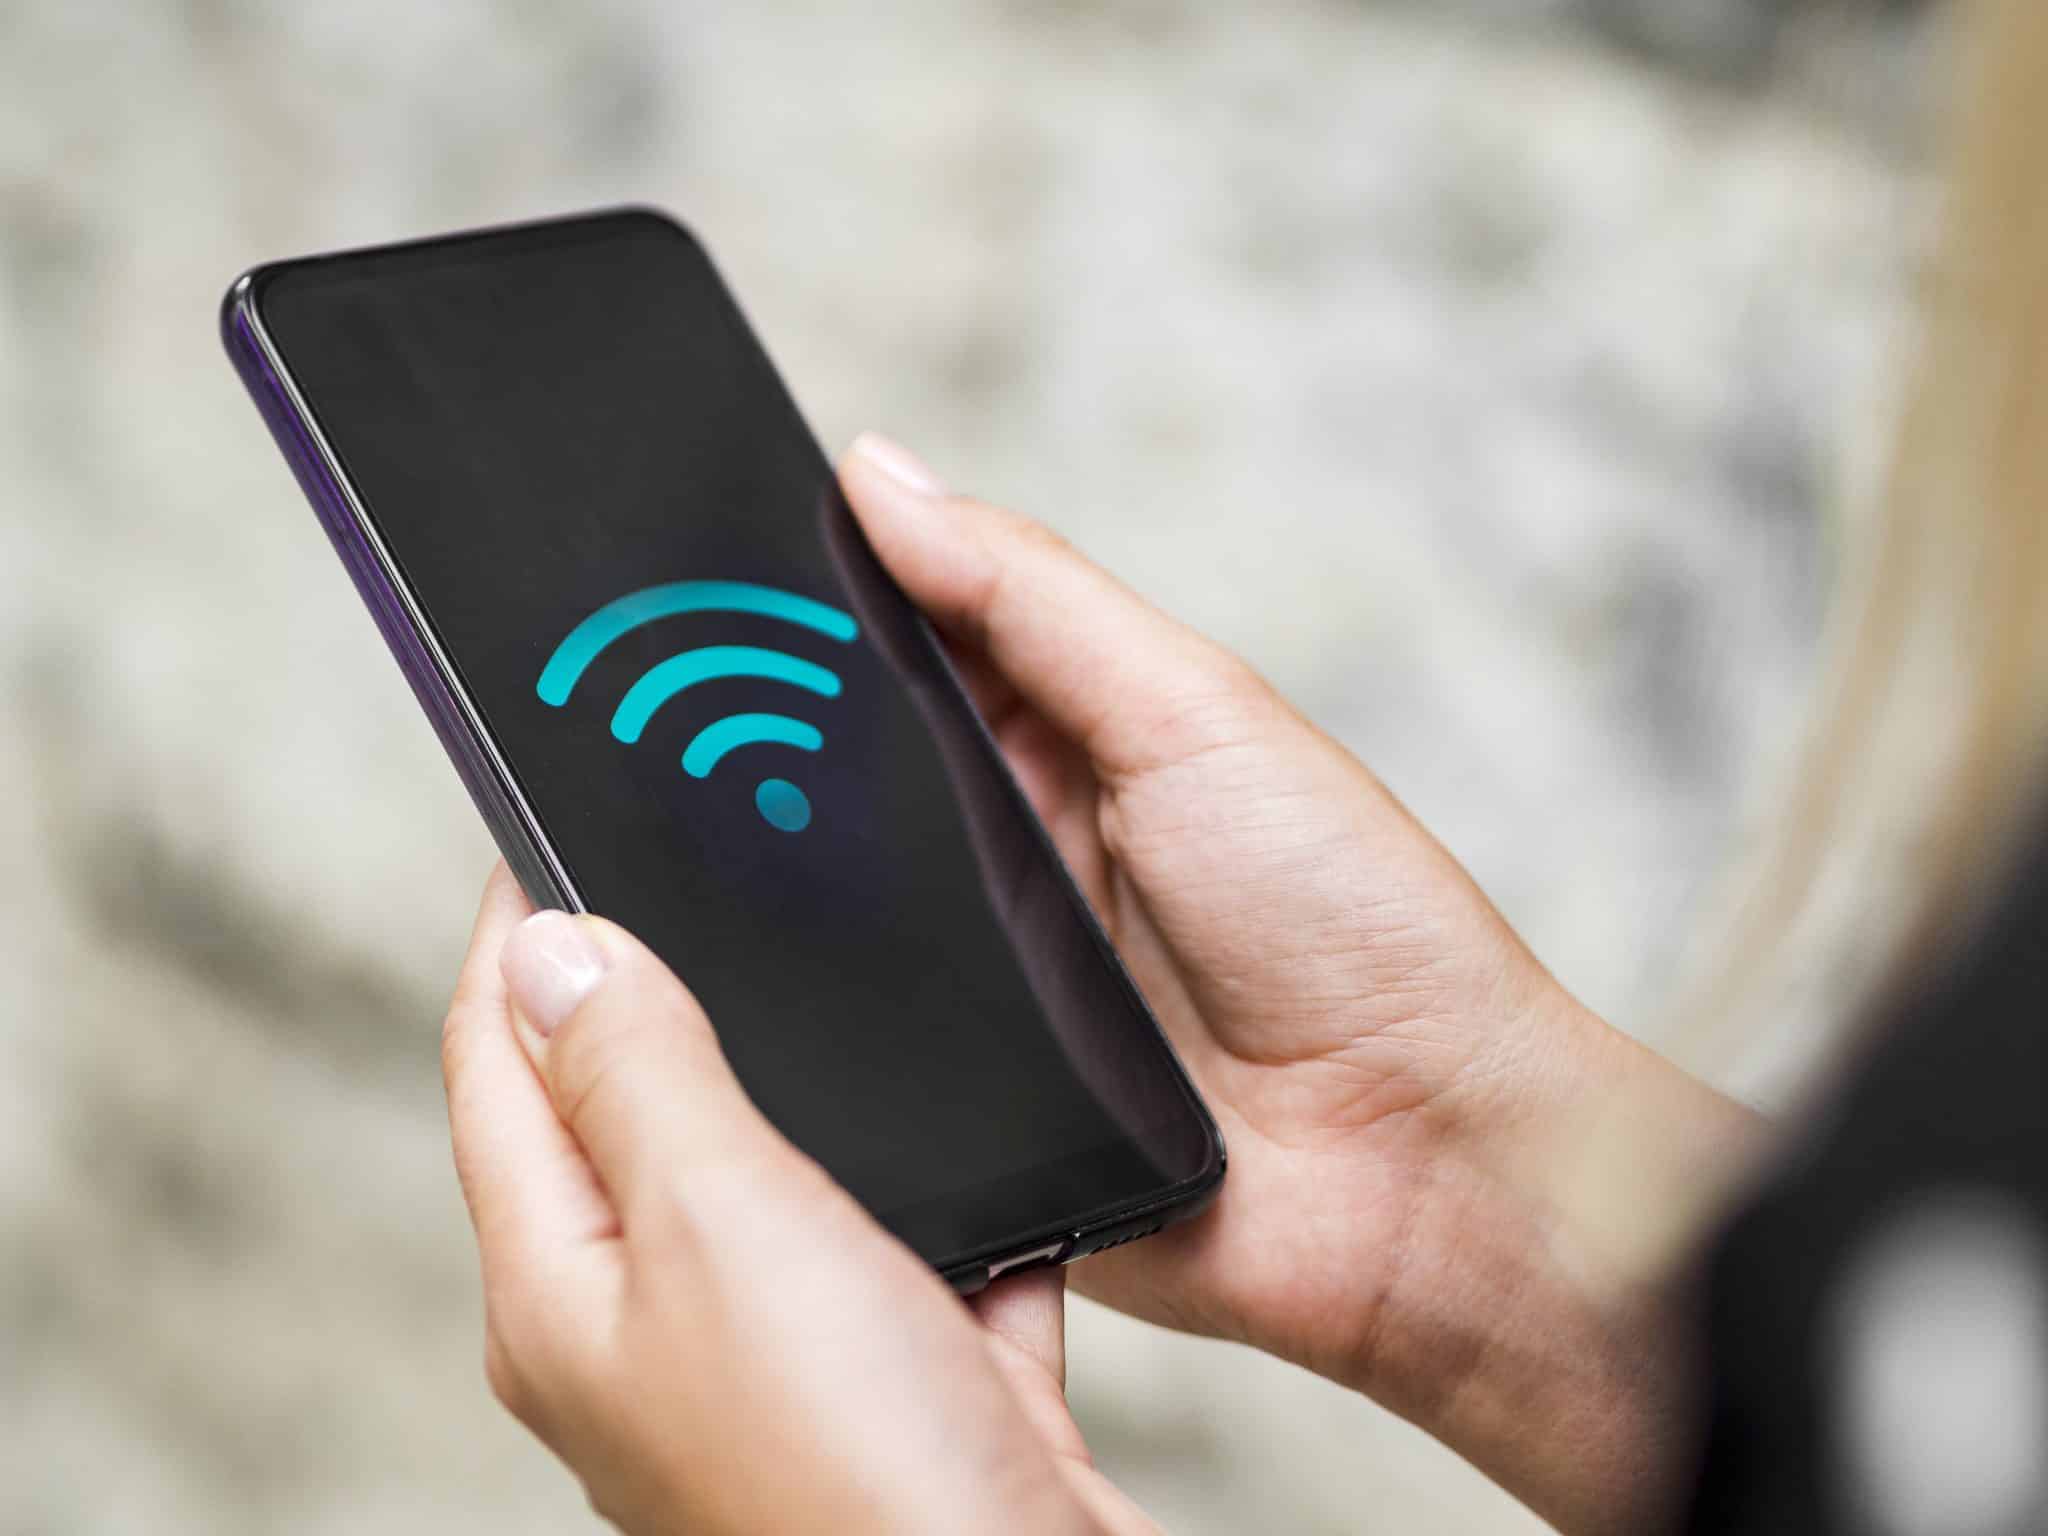 كيفية إيقاف تشغيل مكالمات Wi-Fi على أي هاتف Android - %categories